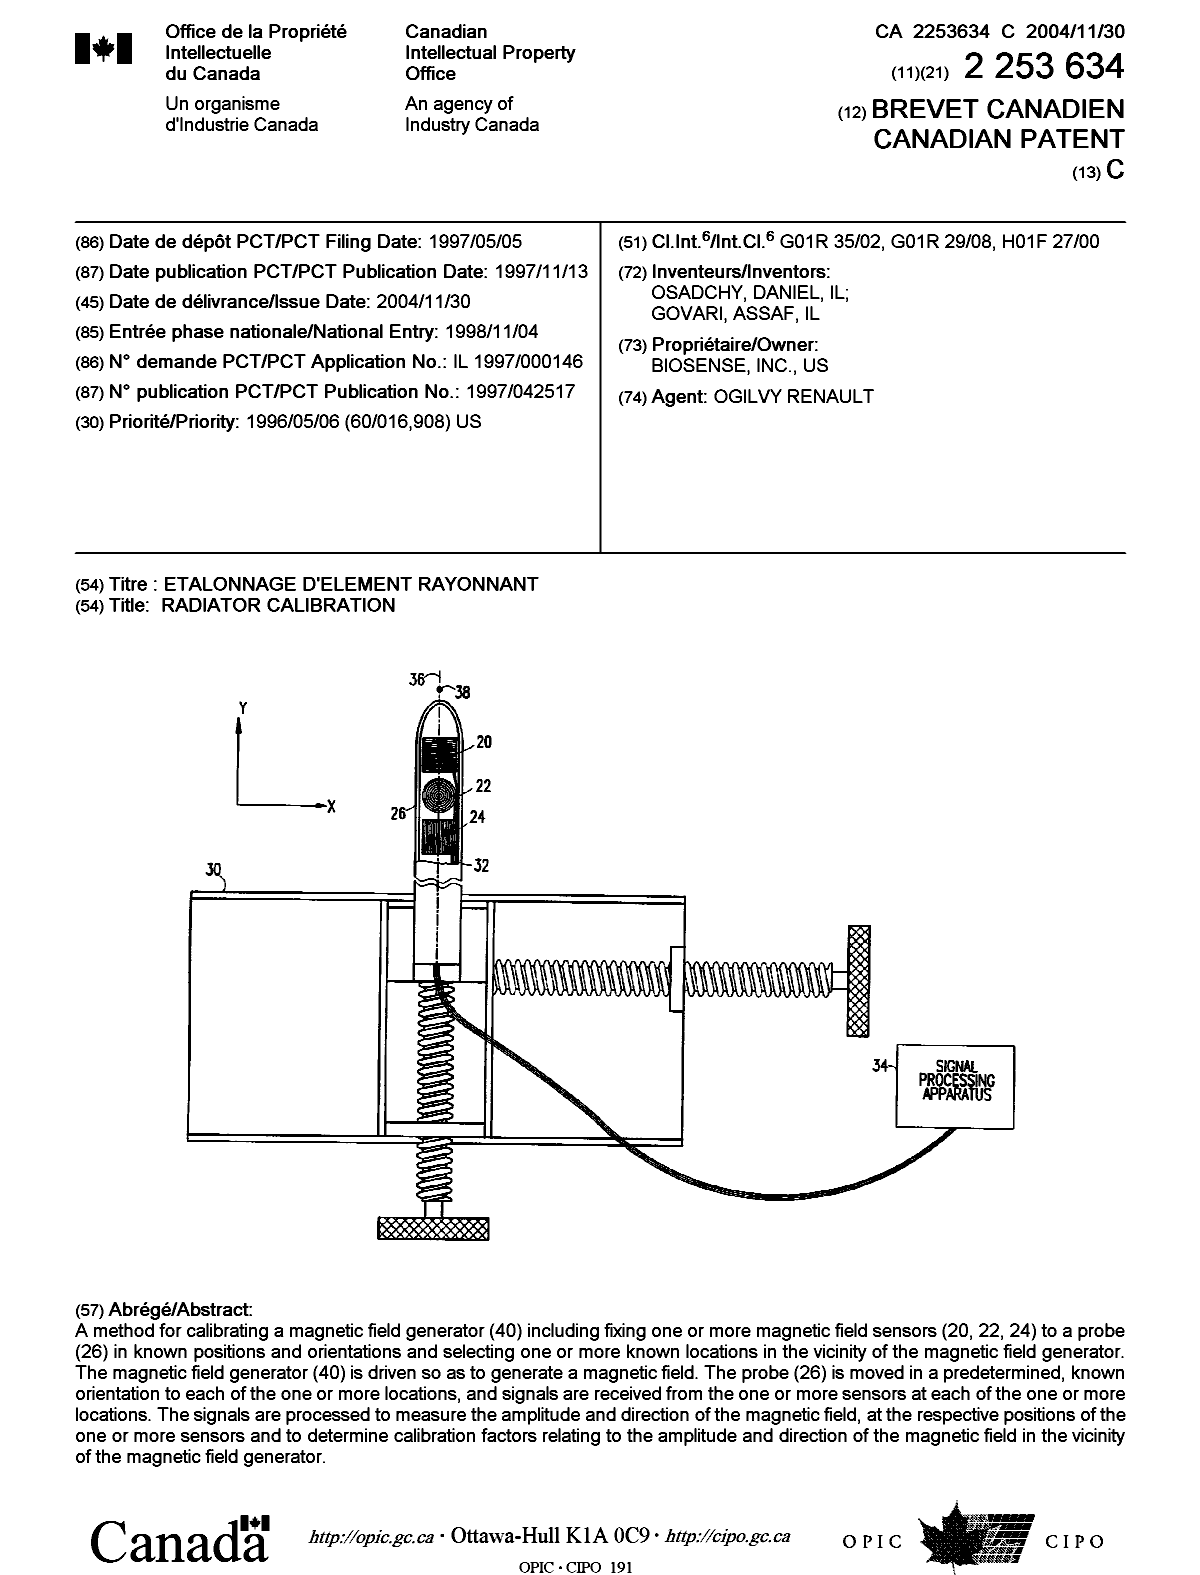 Document de brevet canadien 2253634. Page couverture 20041027. Image 1 de 1